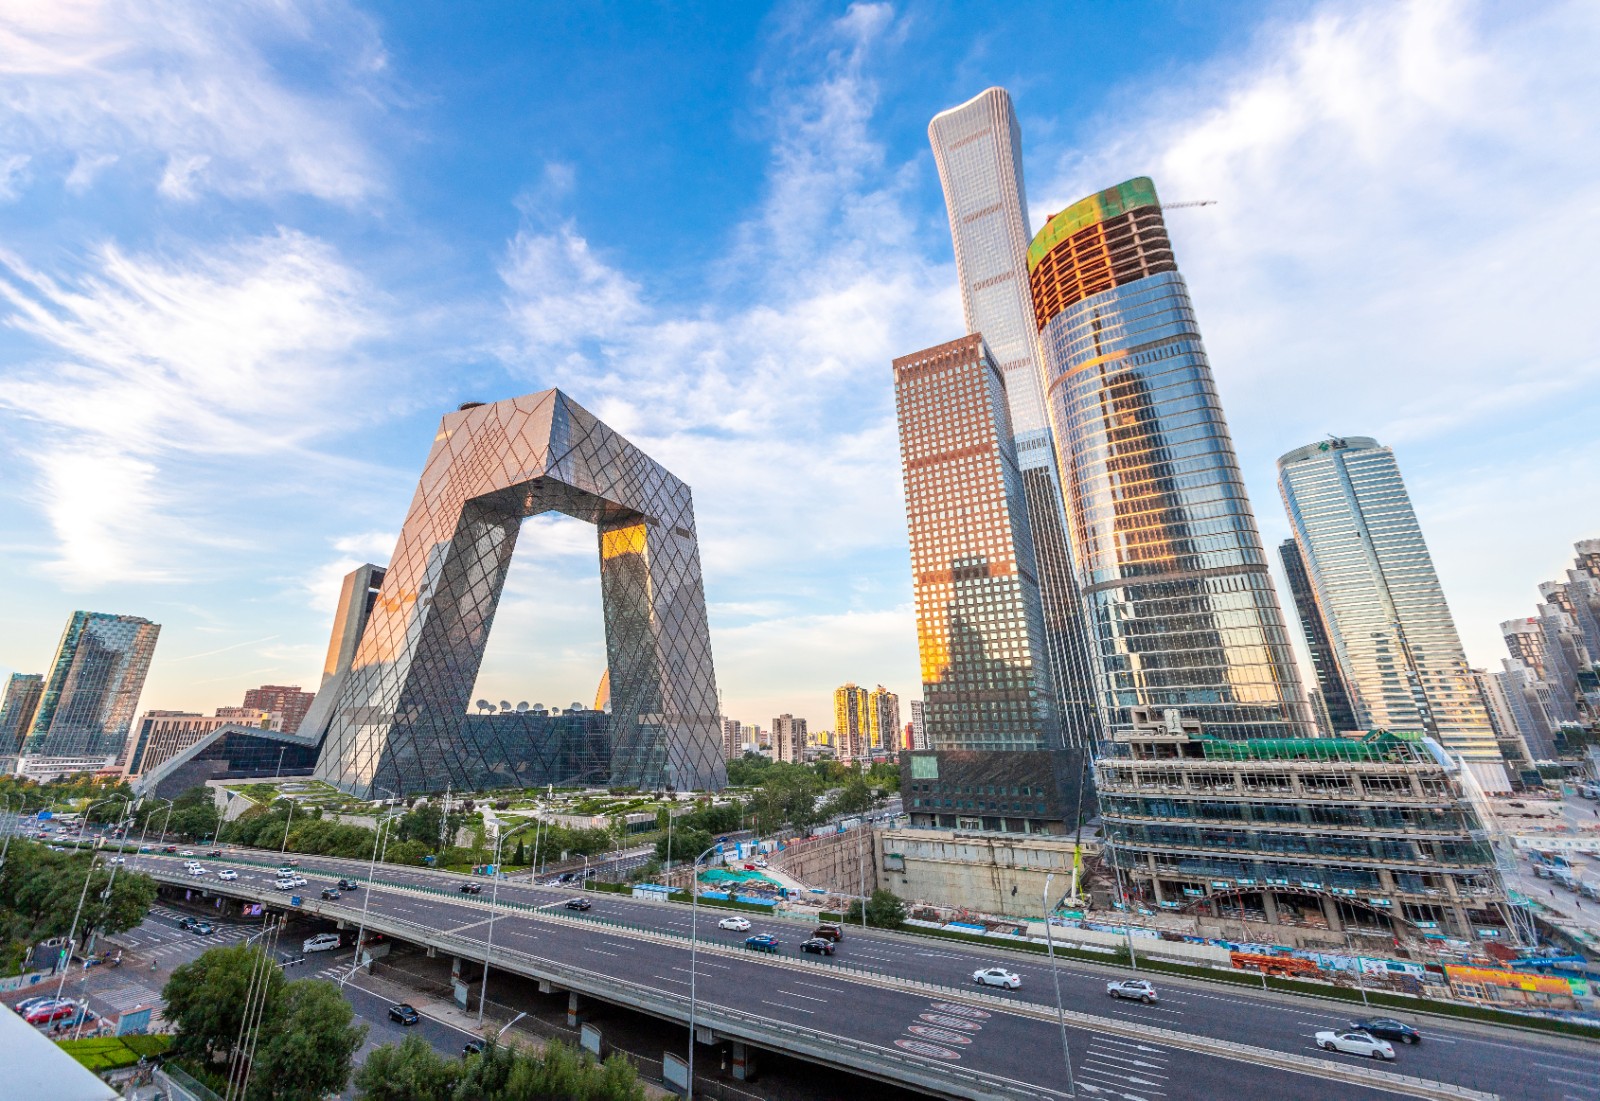 十一假期北京市接待游客1187.9万人次 同比增长48.9%